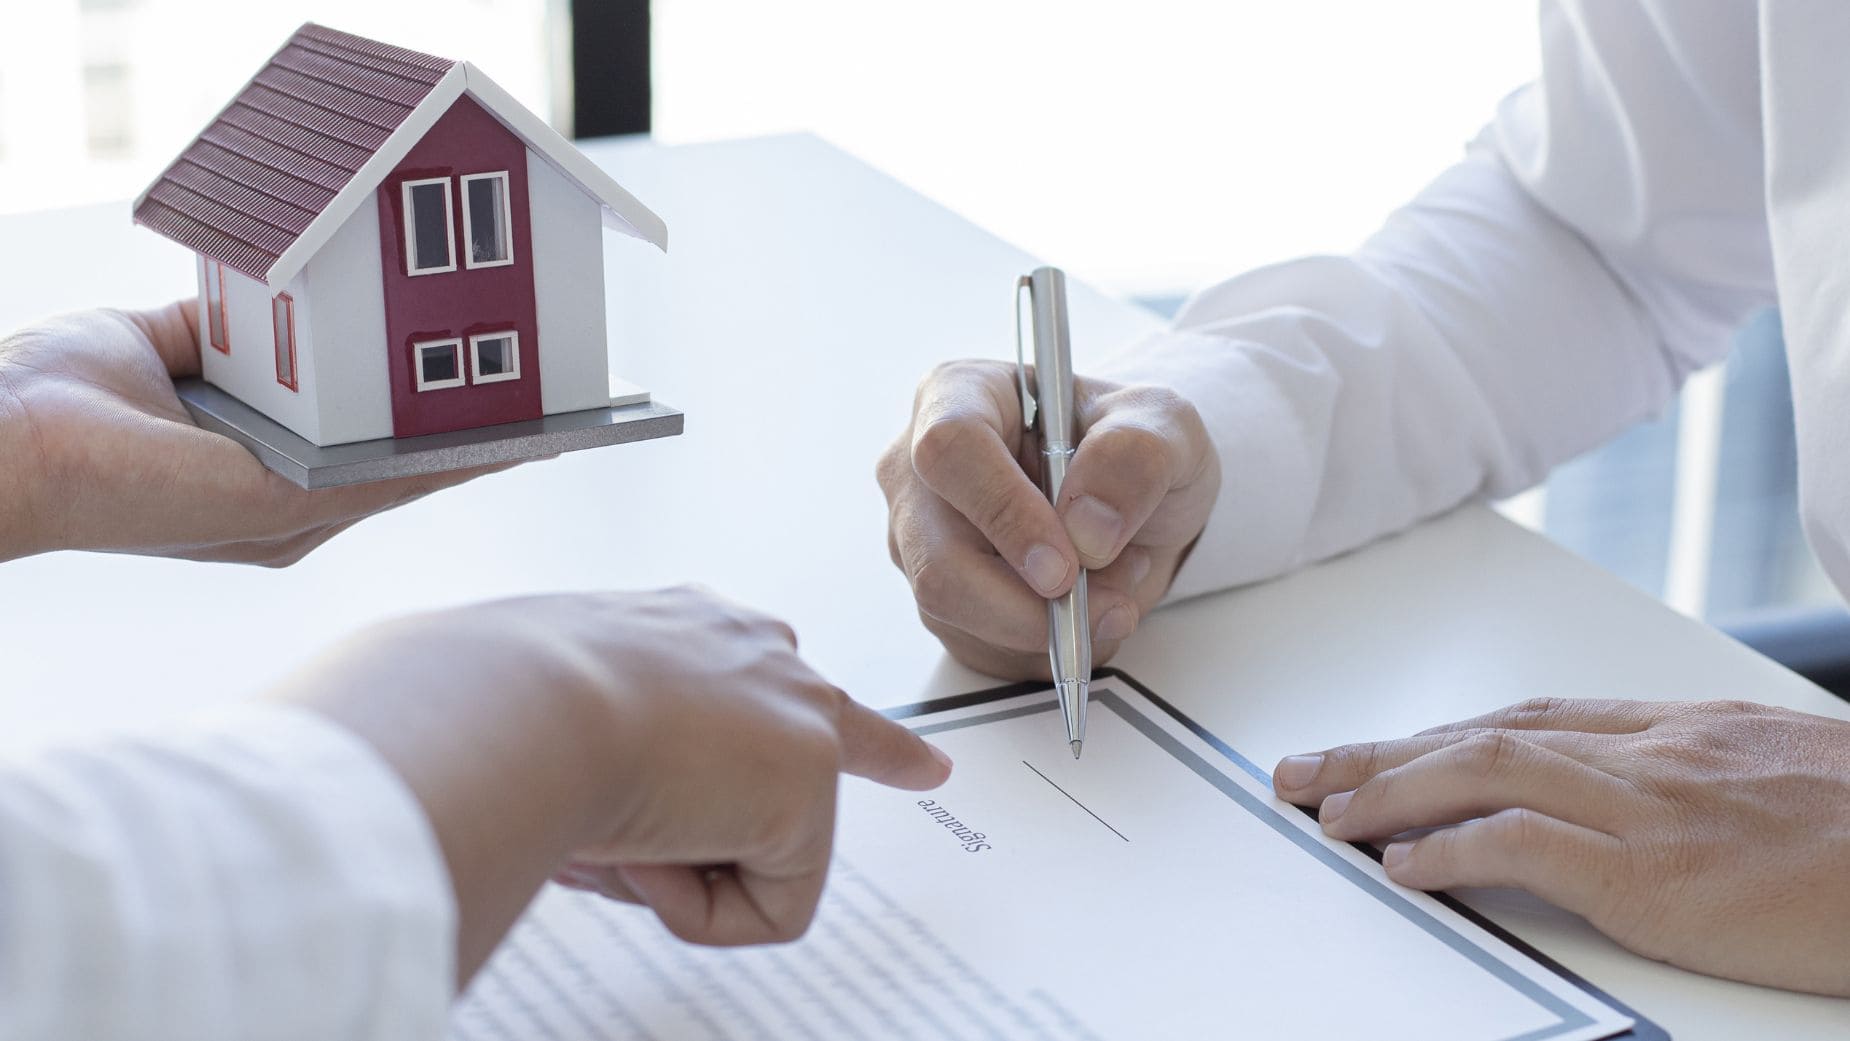 Cuidado con el contrato de alquiler que firmas a la hora de arrendar una vivienda